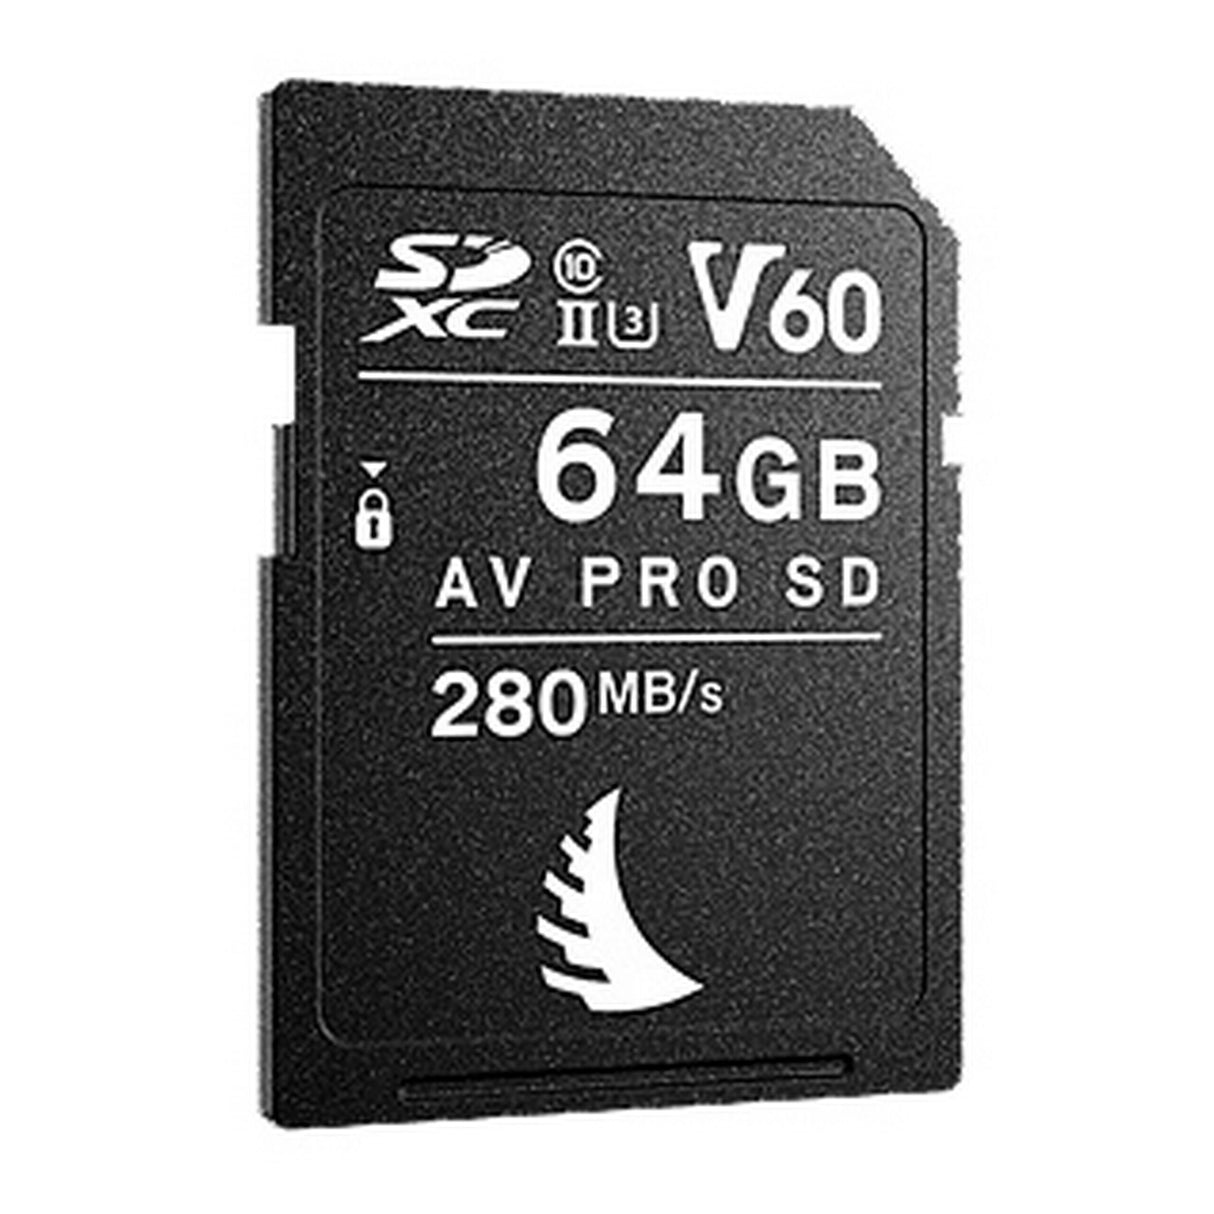 Angelbird AV PRO SD MK2 64GB V60 SDXC Memory Card, 1 Pack